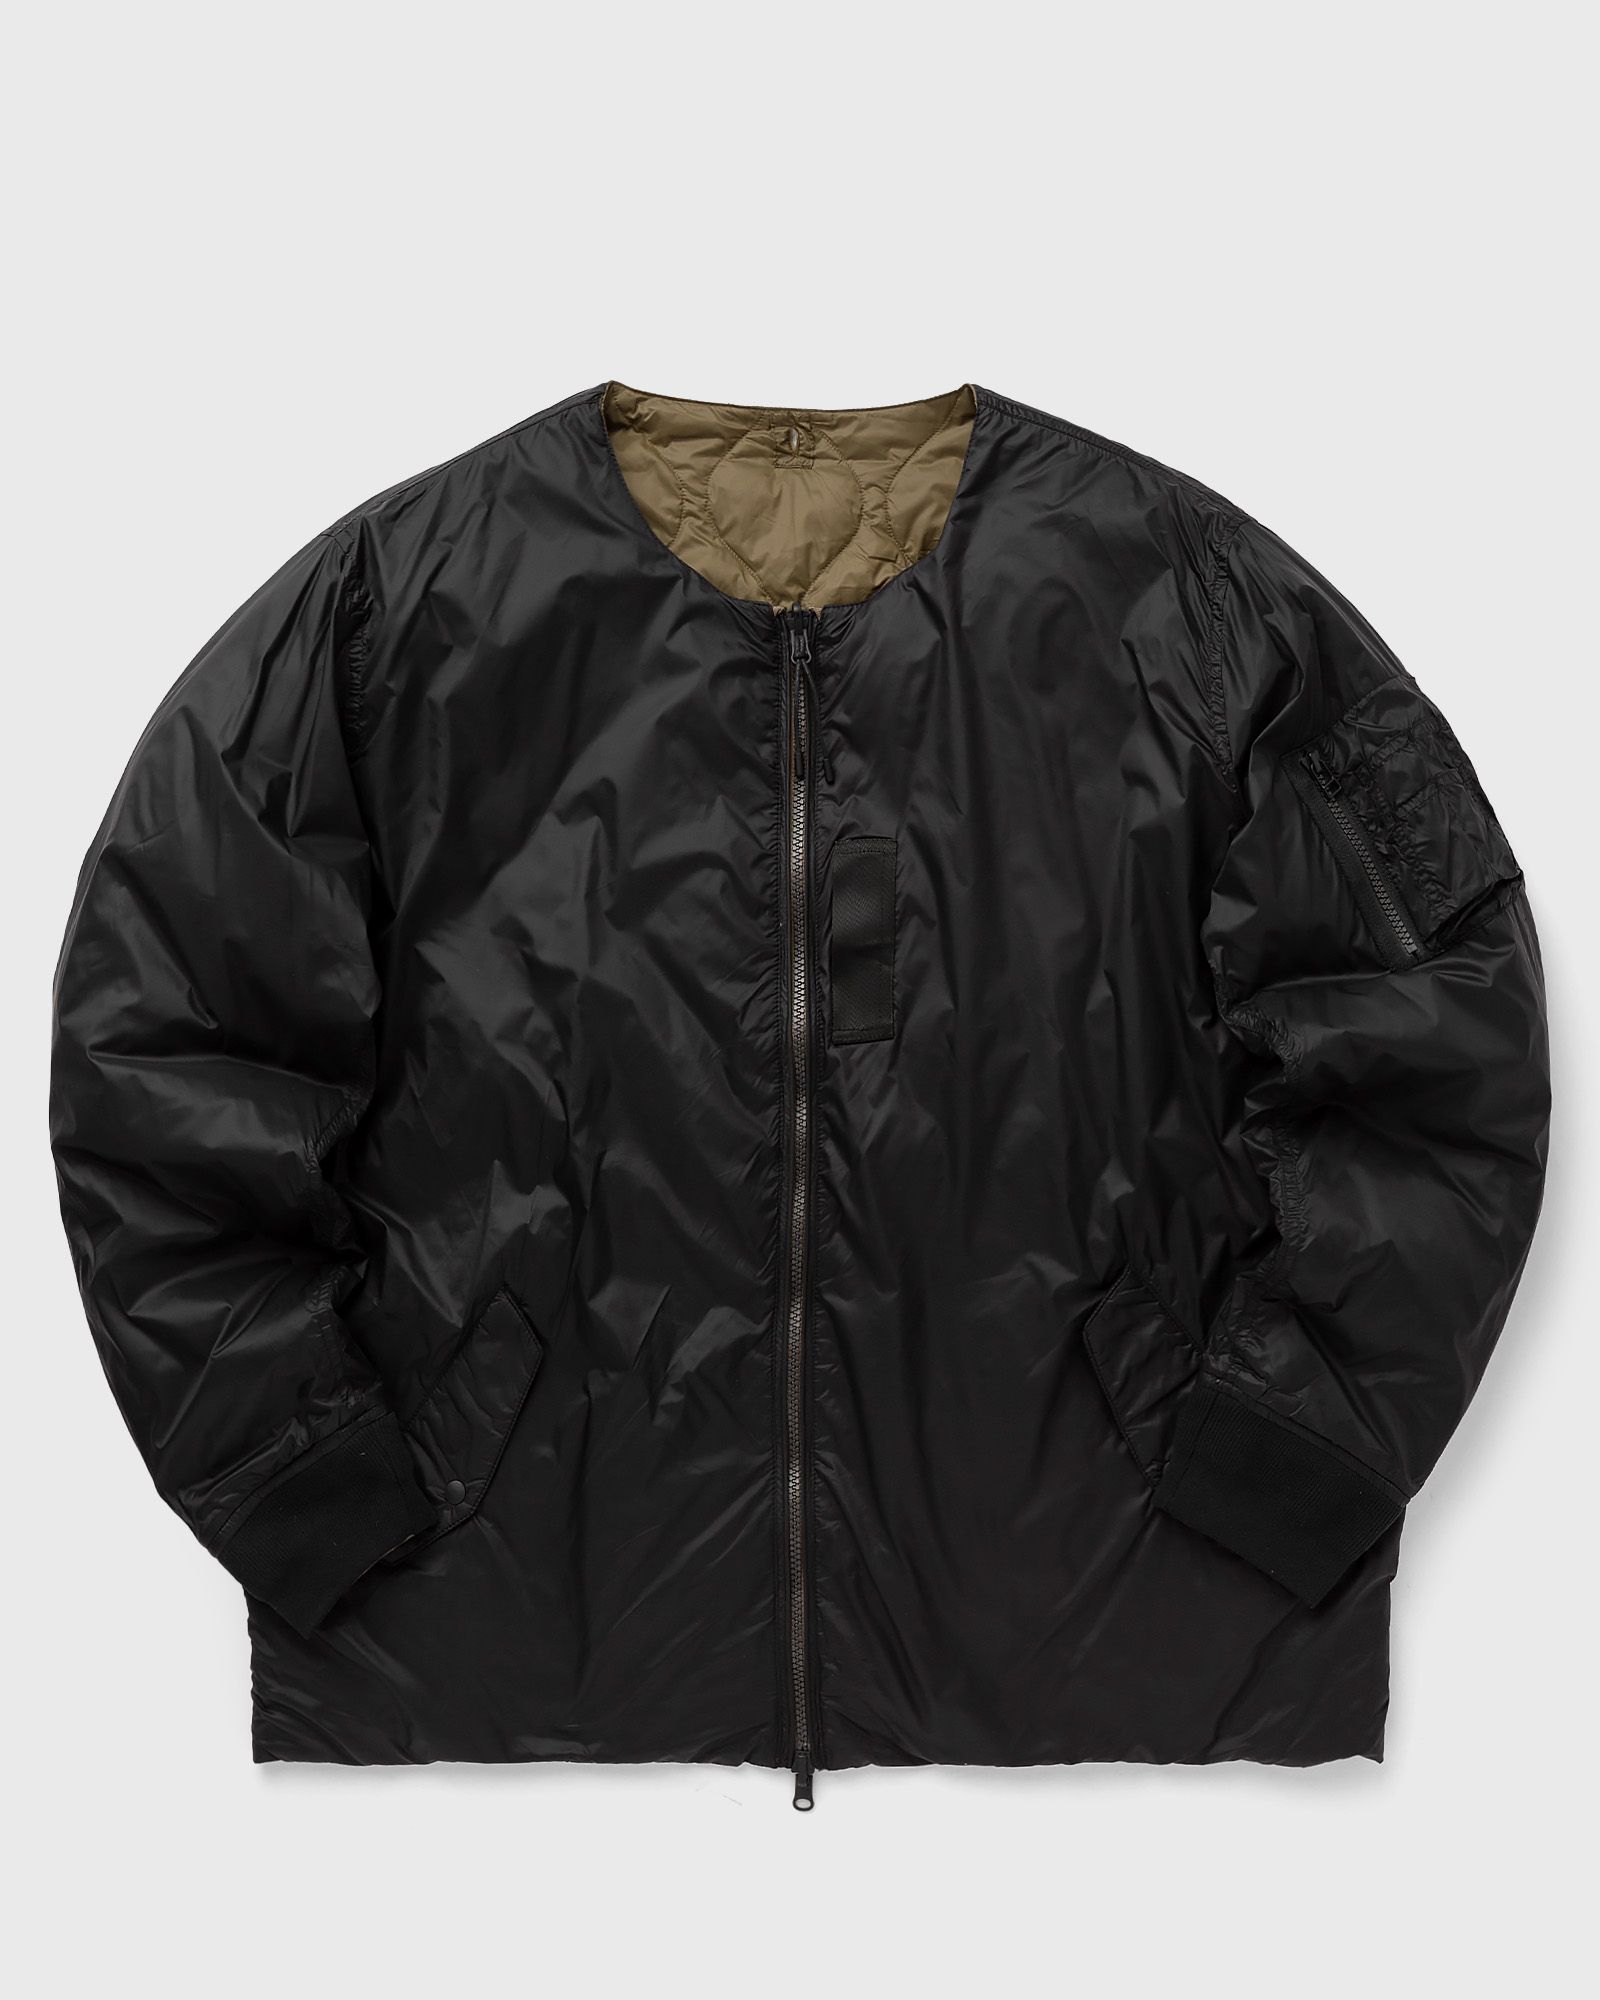 Taion - reversible ma-1 type inner jacket men windbreaker black in größe:xxl